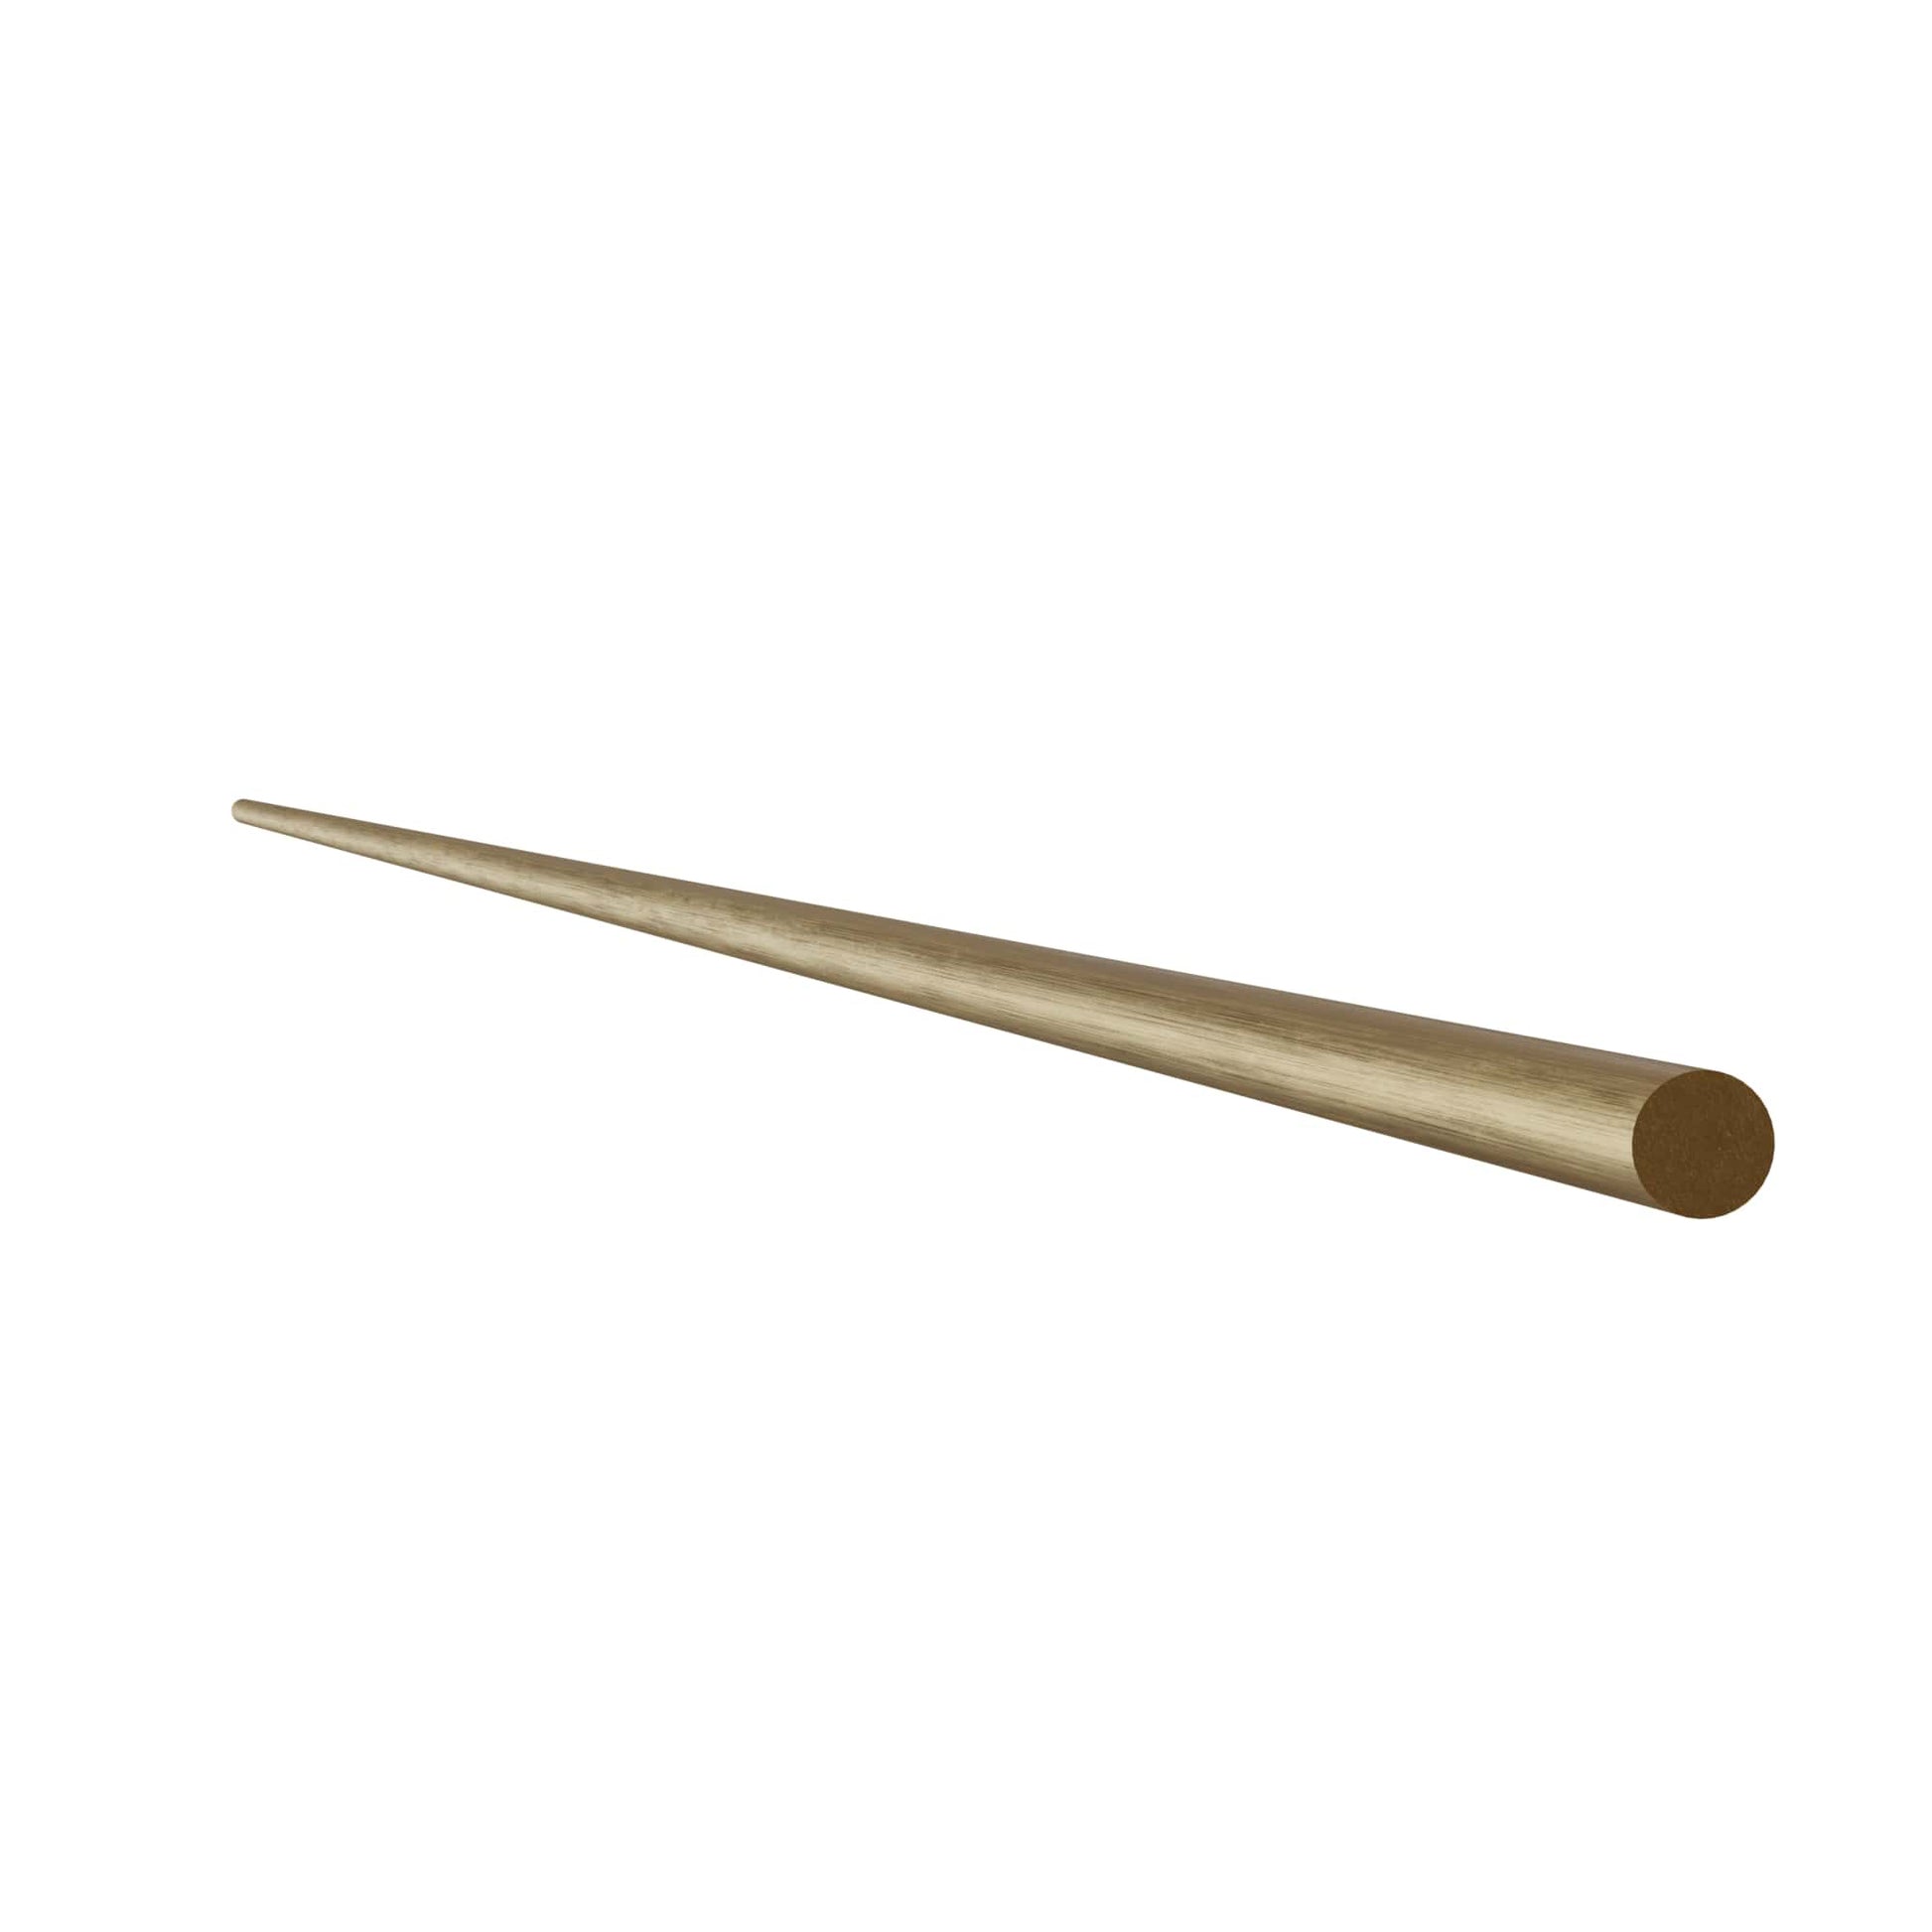 Gallery Rail Rod, Satin Brass, 6mm x 36" L alt 0